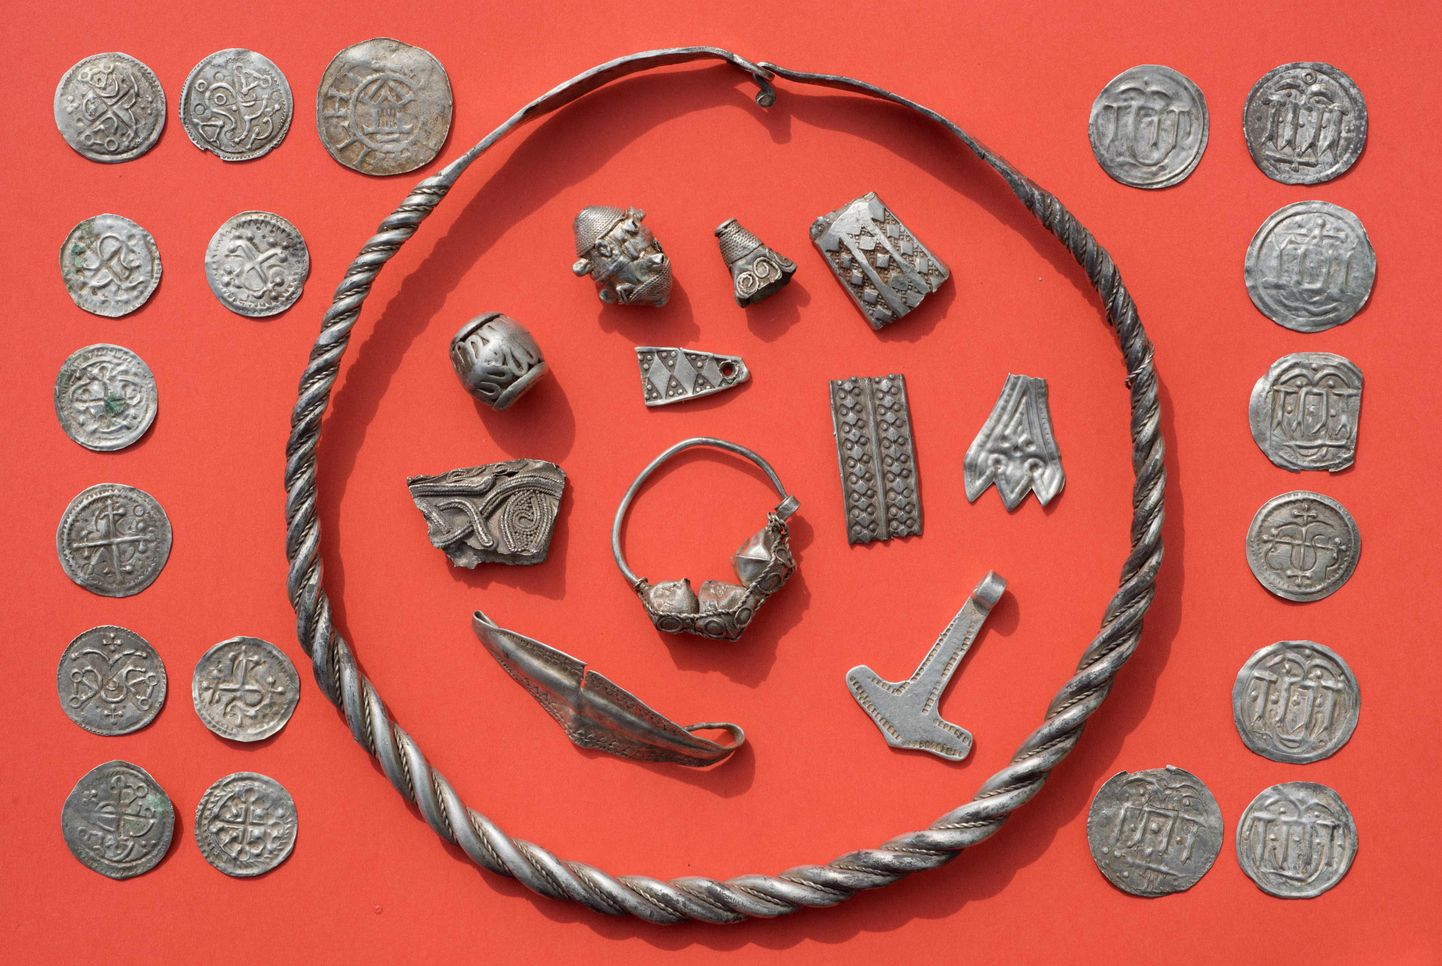 Saksa Rügeni saarelt leitud Taani kuninga Harald Sinihabeme (910 - 986) ajastutust pärit ehted ja mündid